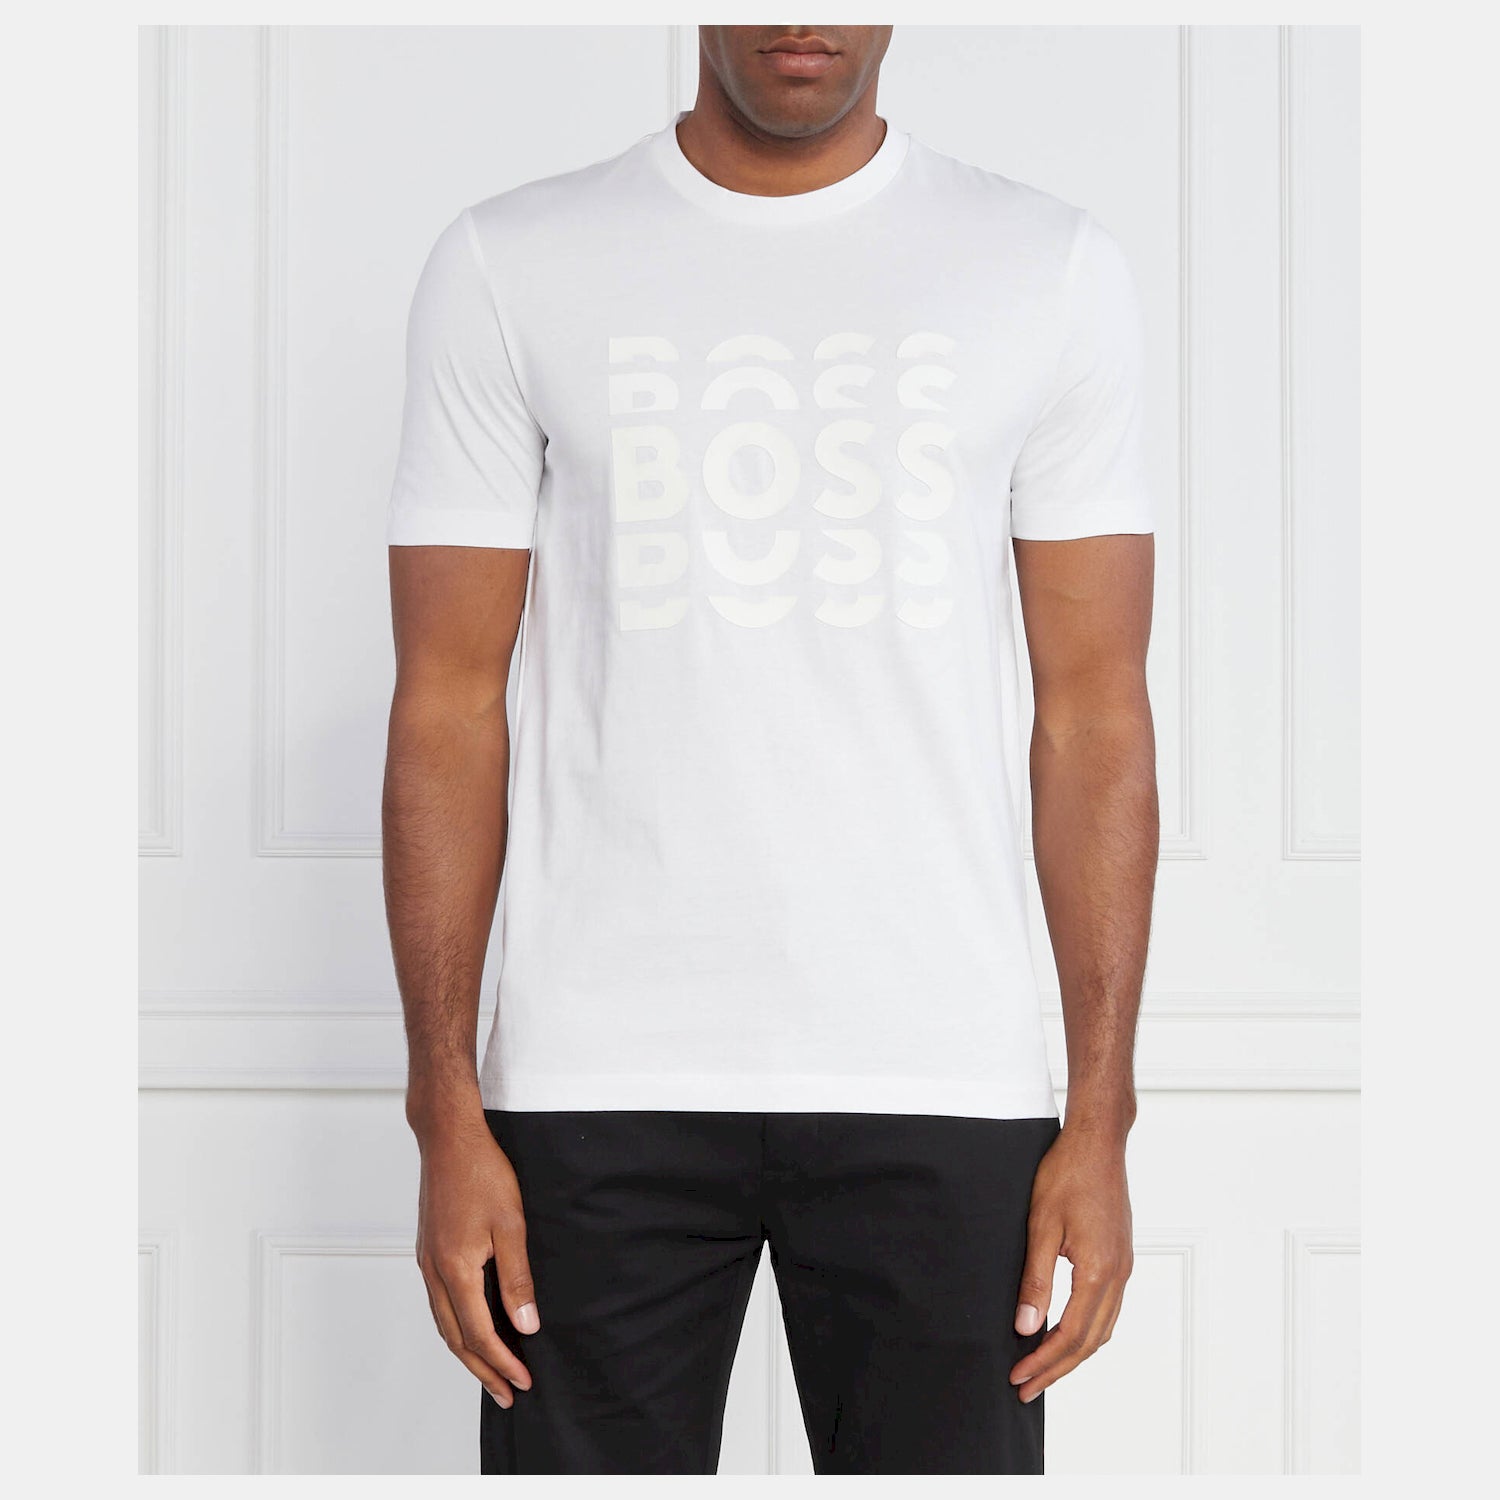 Boss T Shirt Tiburt414 White Branco_shot1